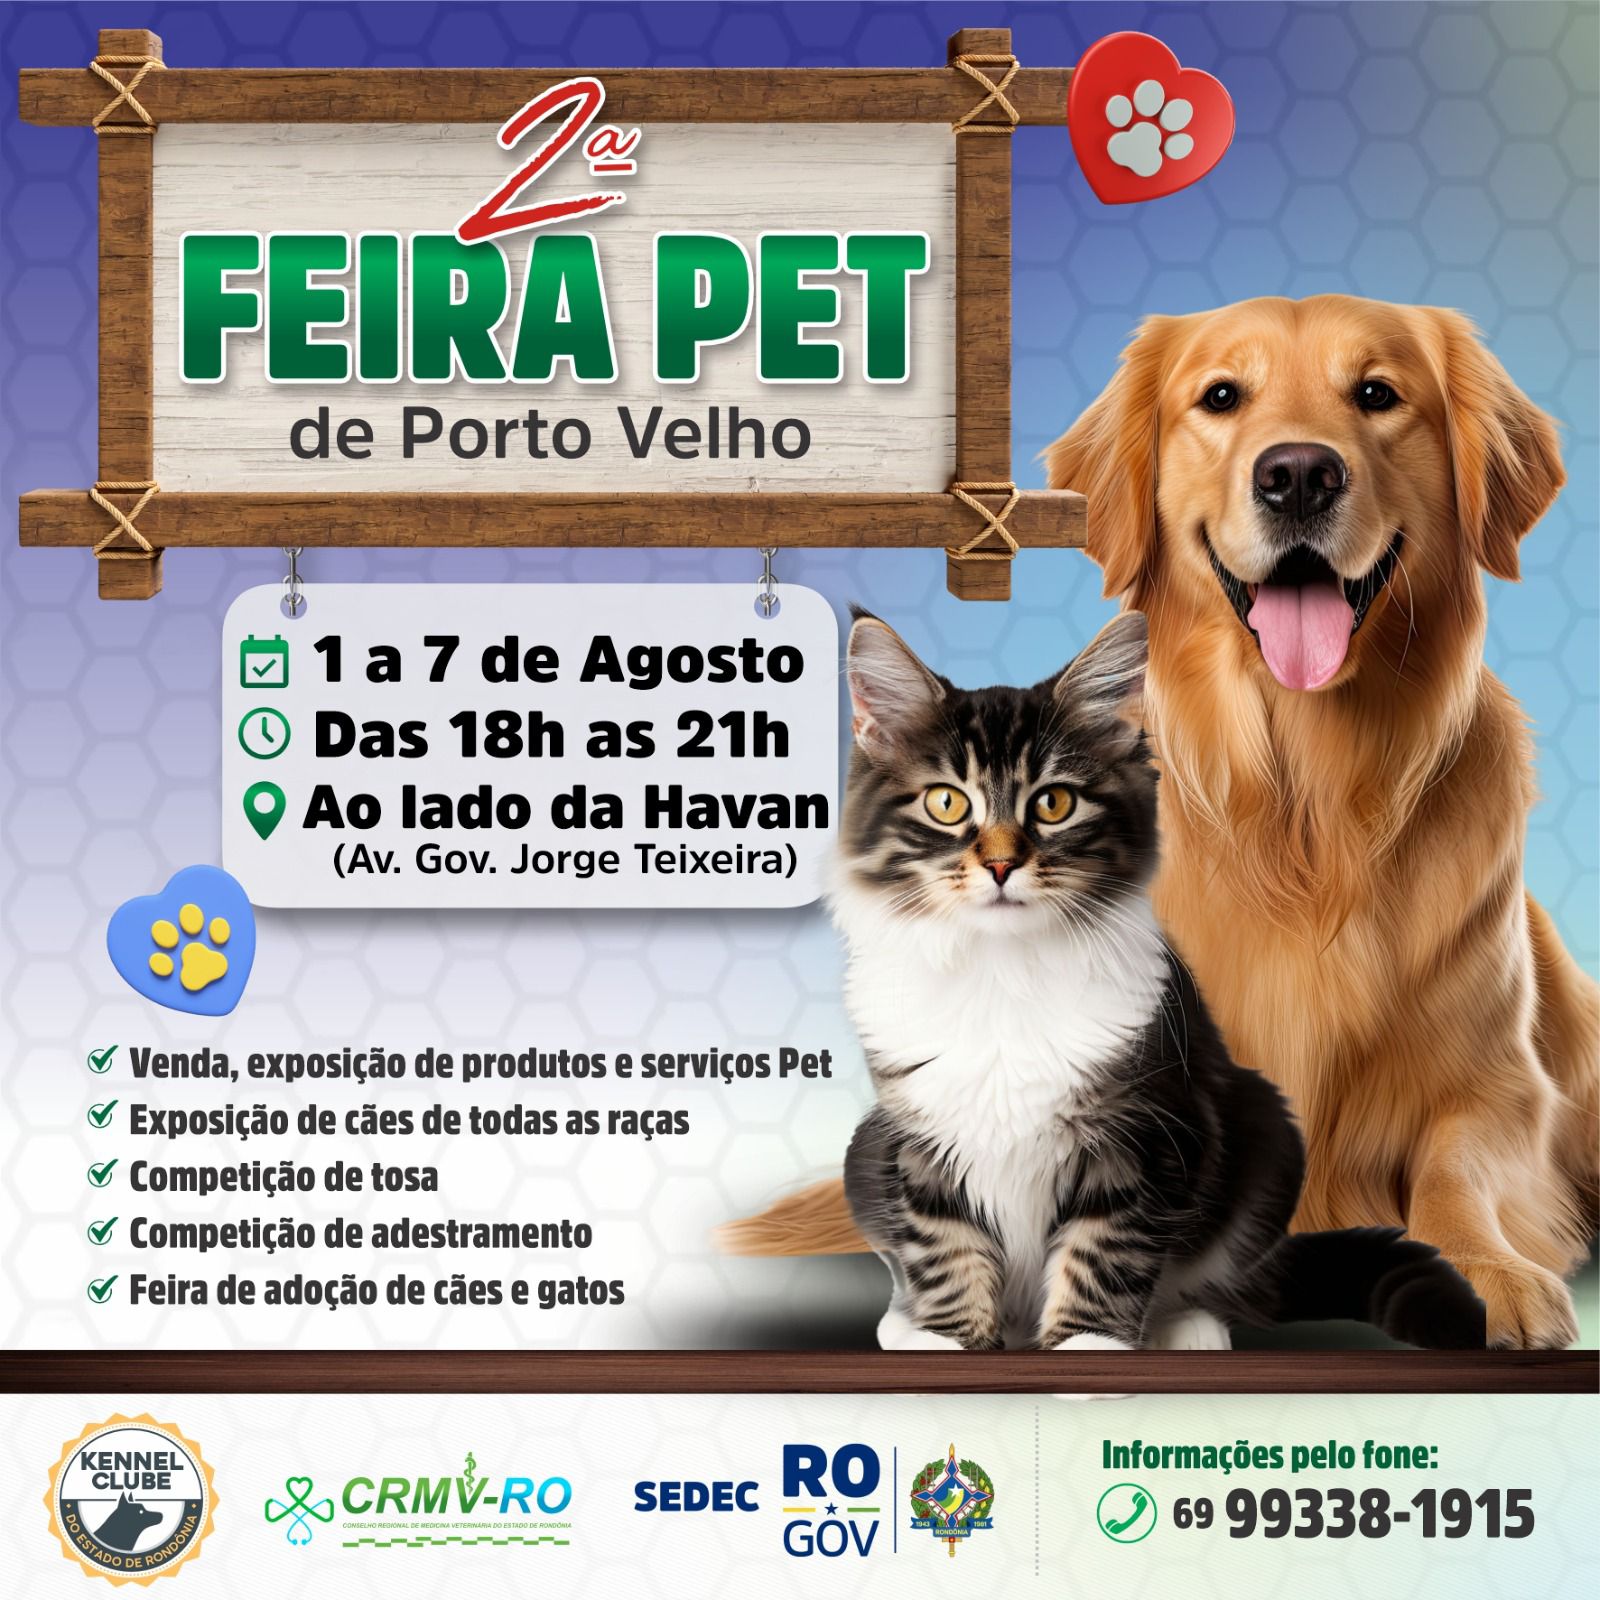 MIAU-AU: 2ª Feira Pet acontece em Porto Velho a partir desta quinta (01)